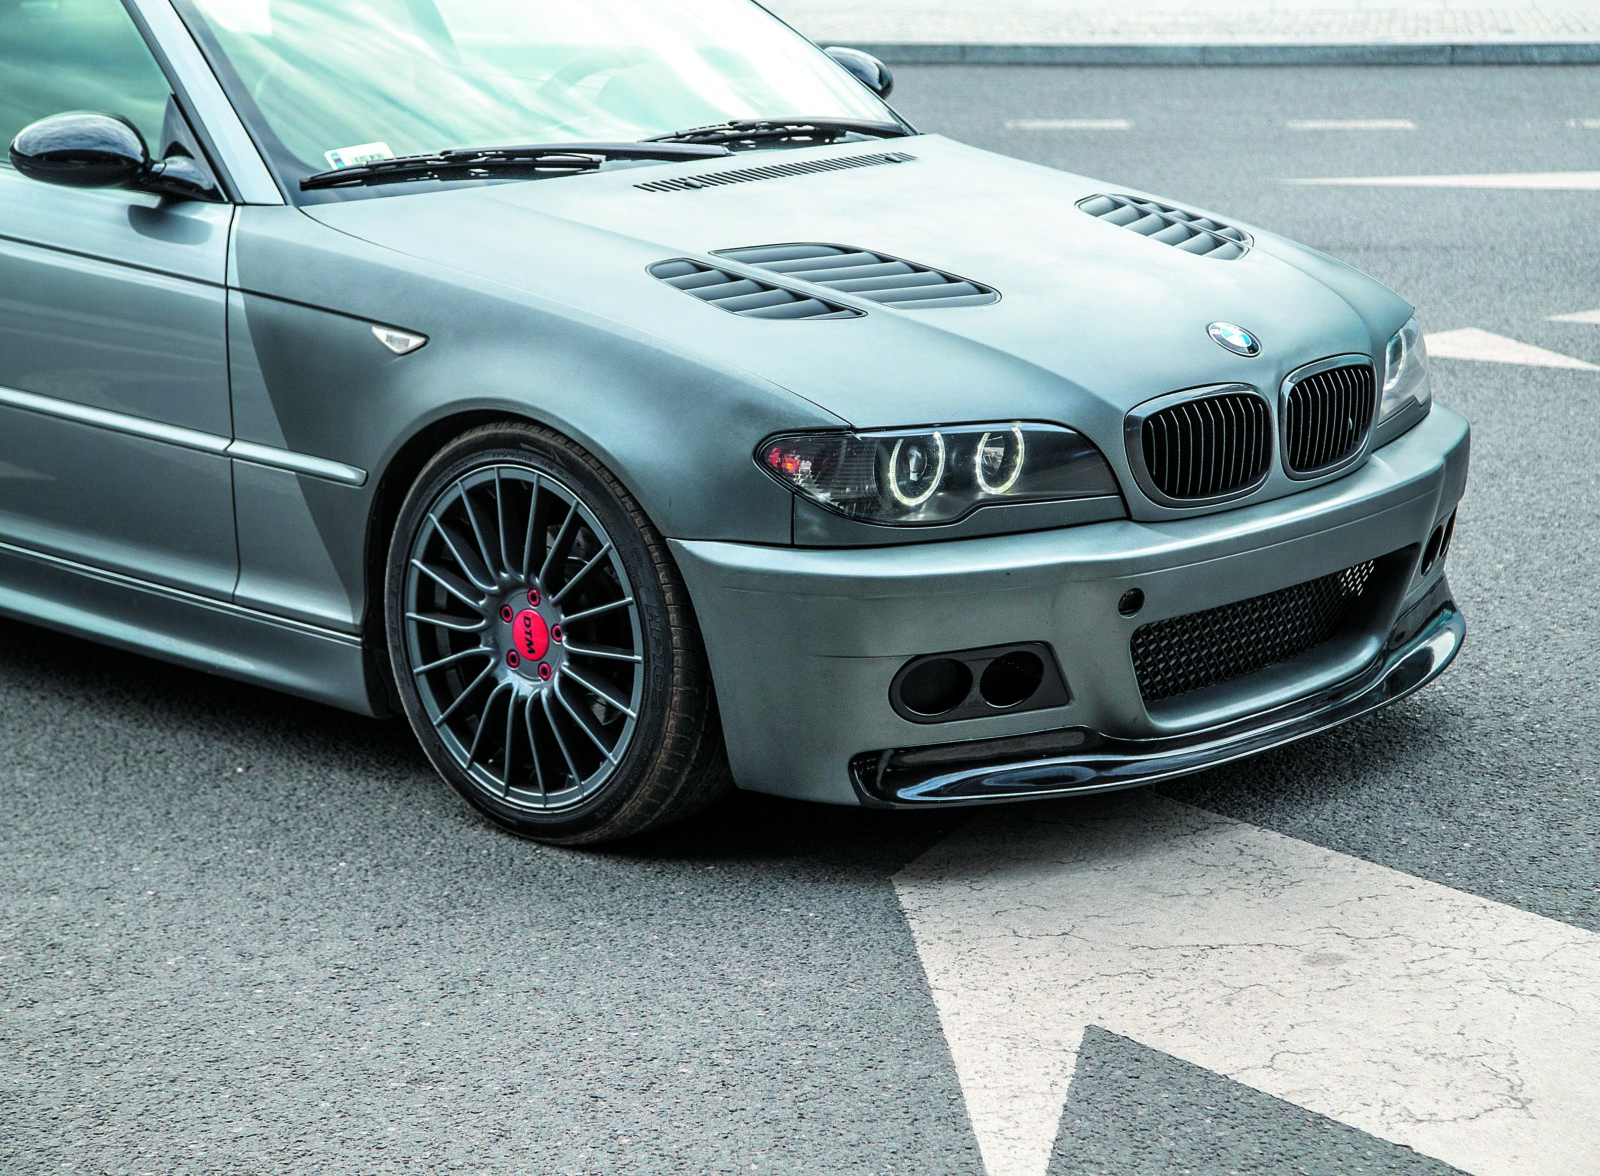 Piekielnie mocne BMW E46 idealne pod tuning?